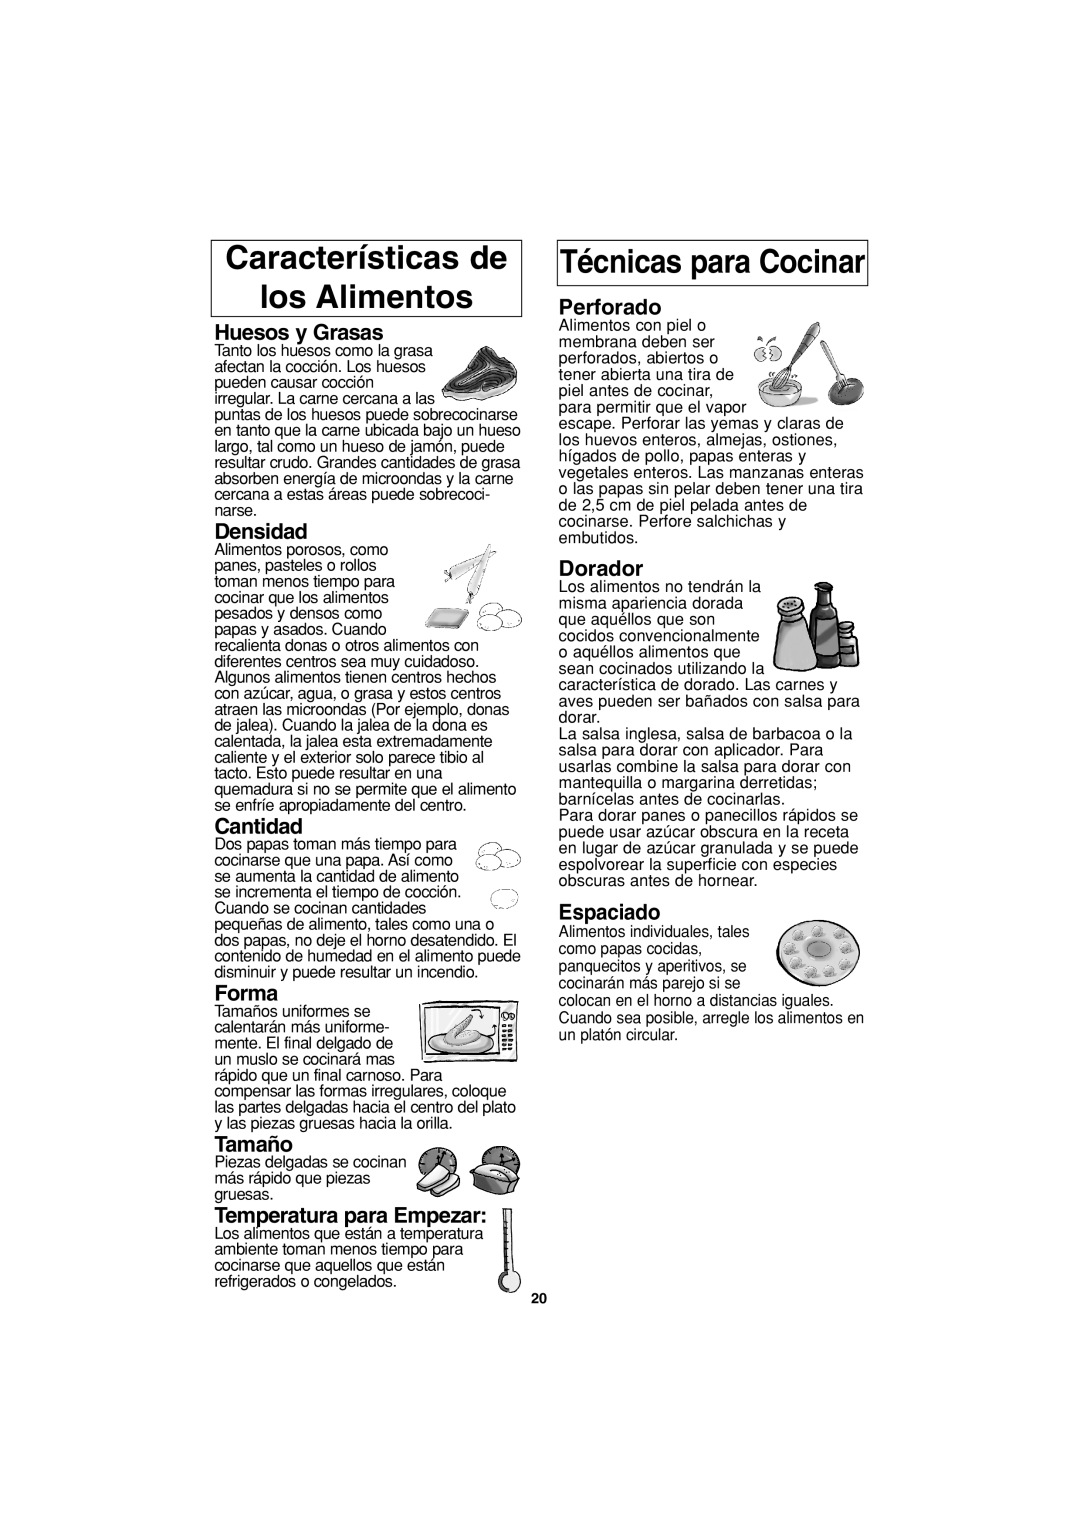 Panasonic NN-S423 Características de los Alimentos, Técnicas para Cocinar, Huesos y Grasas, Densidad, Cantidad, Forma 